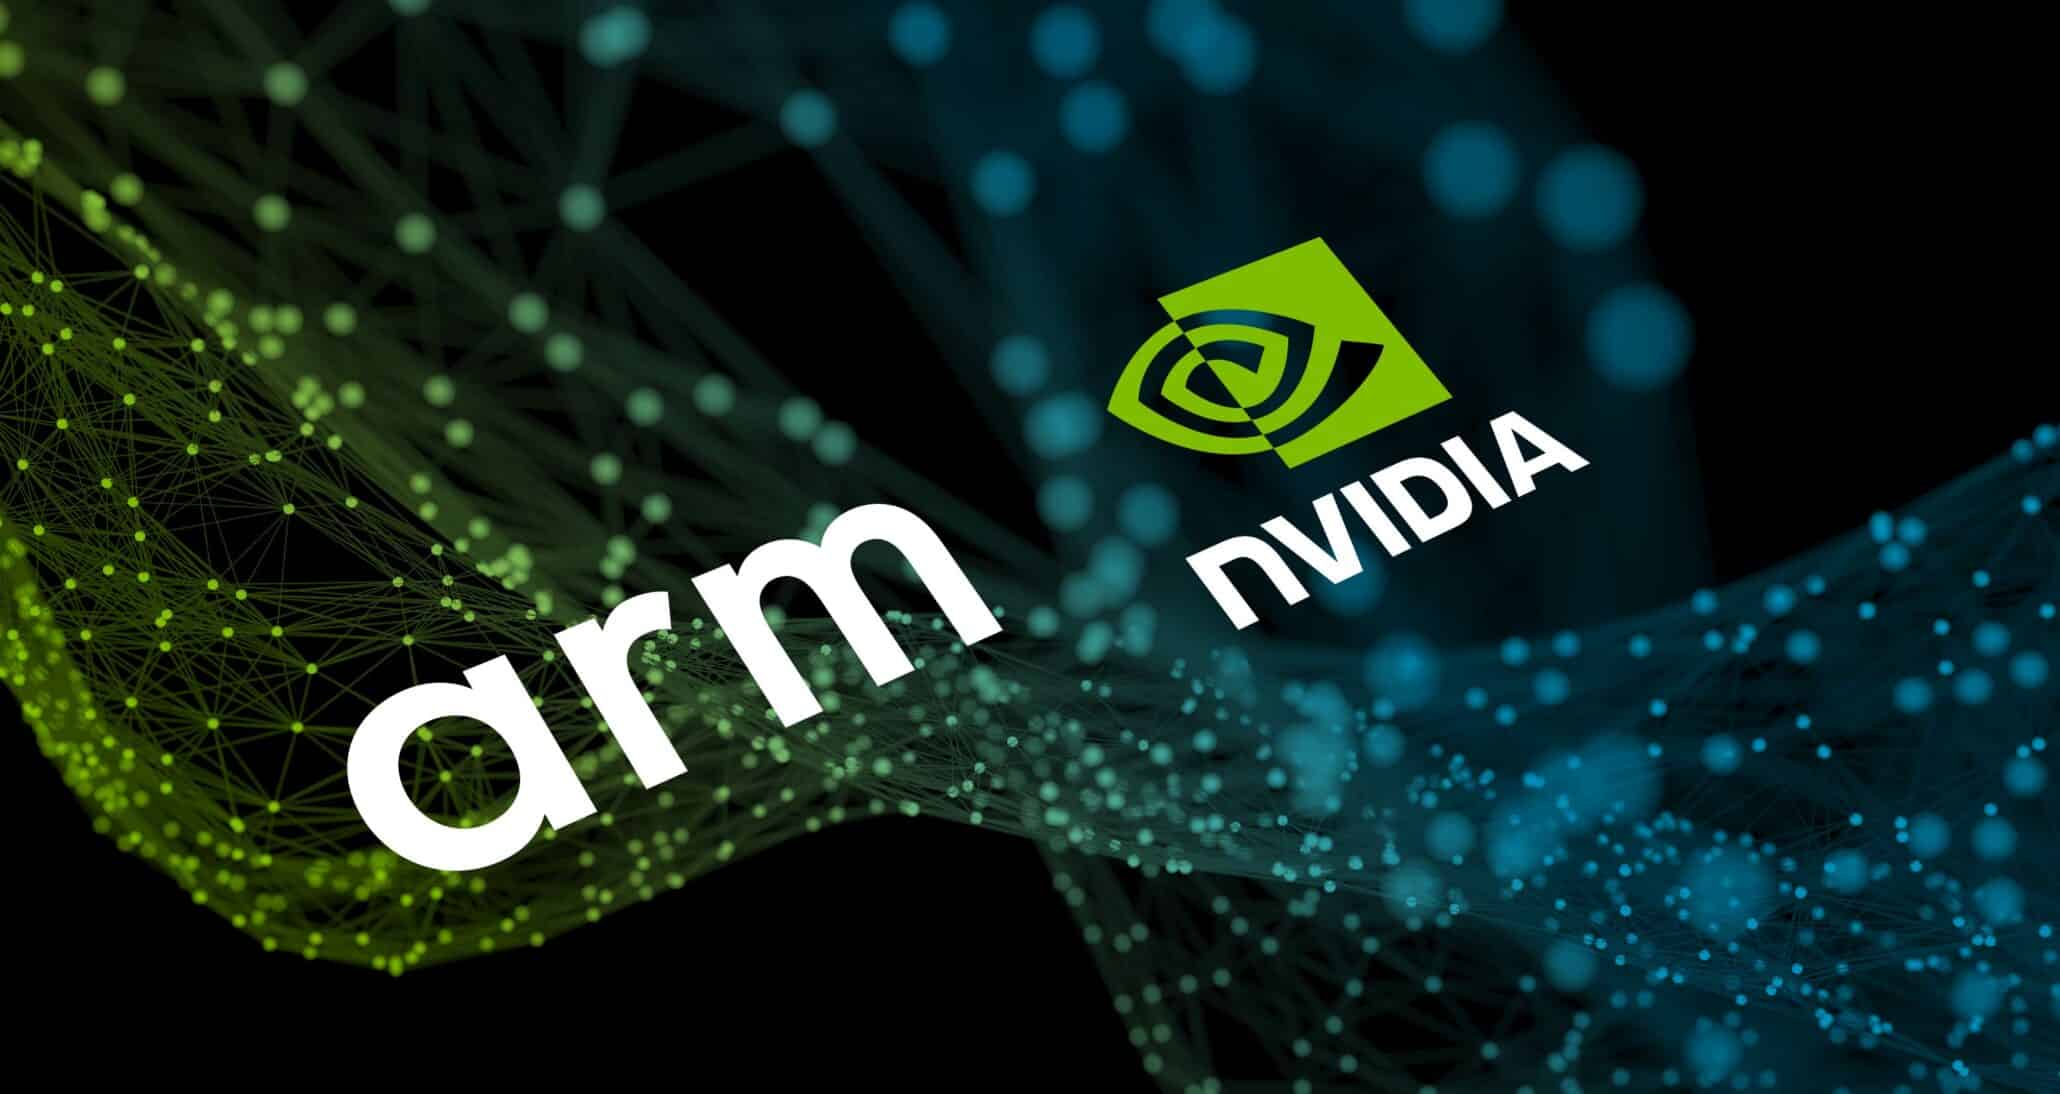 Qualcomm to invest in UK chip designer Arm if regulators block sale to Nvidia